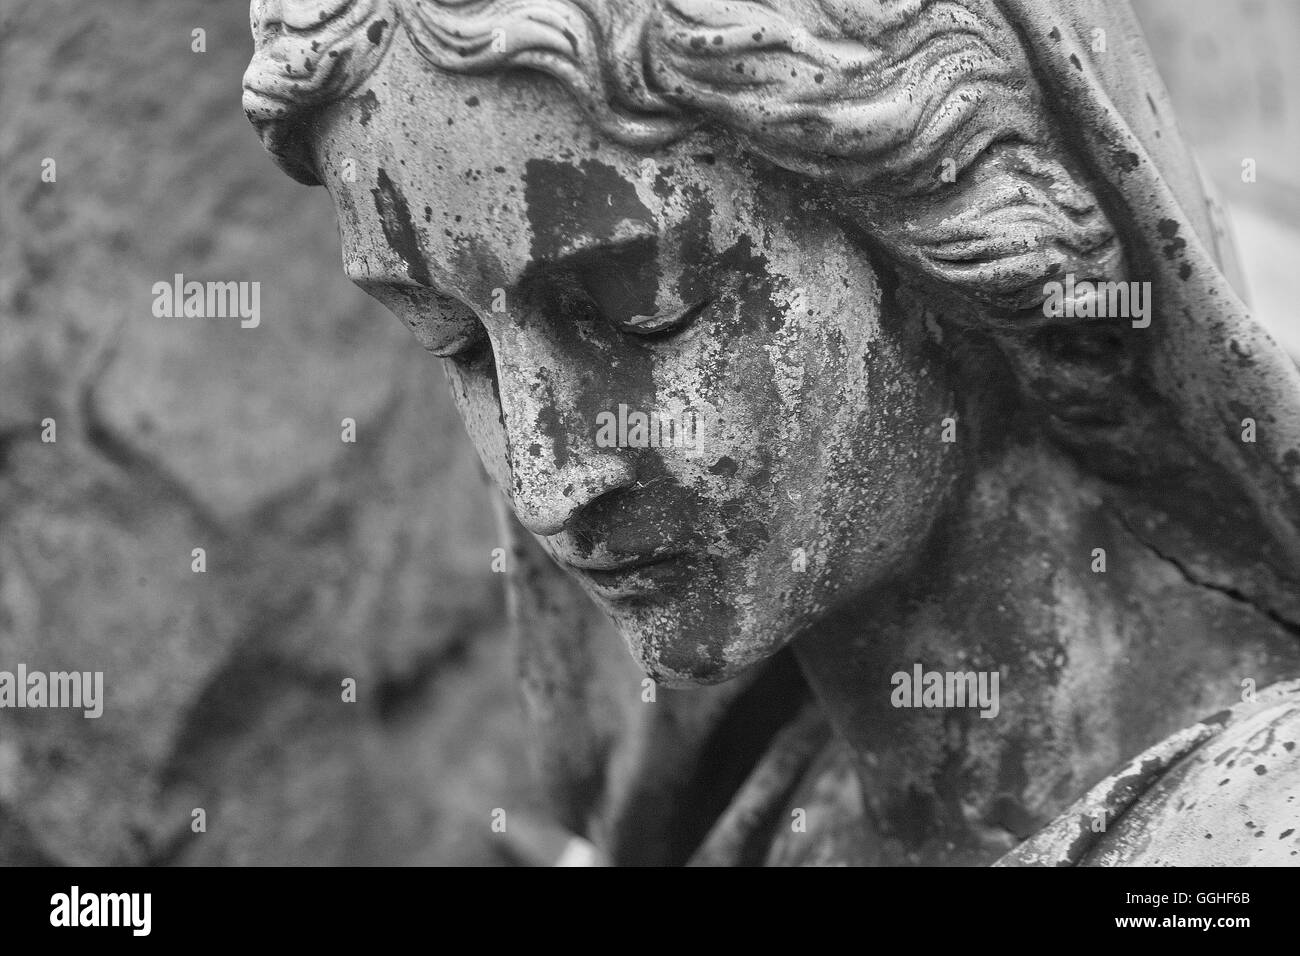 Purtroppo la scultura donna, ragazza, tomba di scultura, purtroppo il volto dolente / grab-skulptur, trauernde frau schwarz-weiß foto Foto Stock